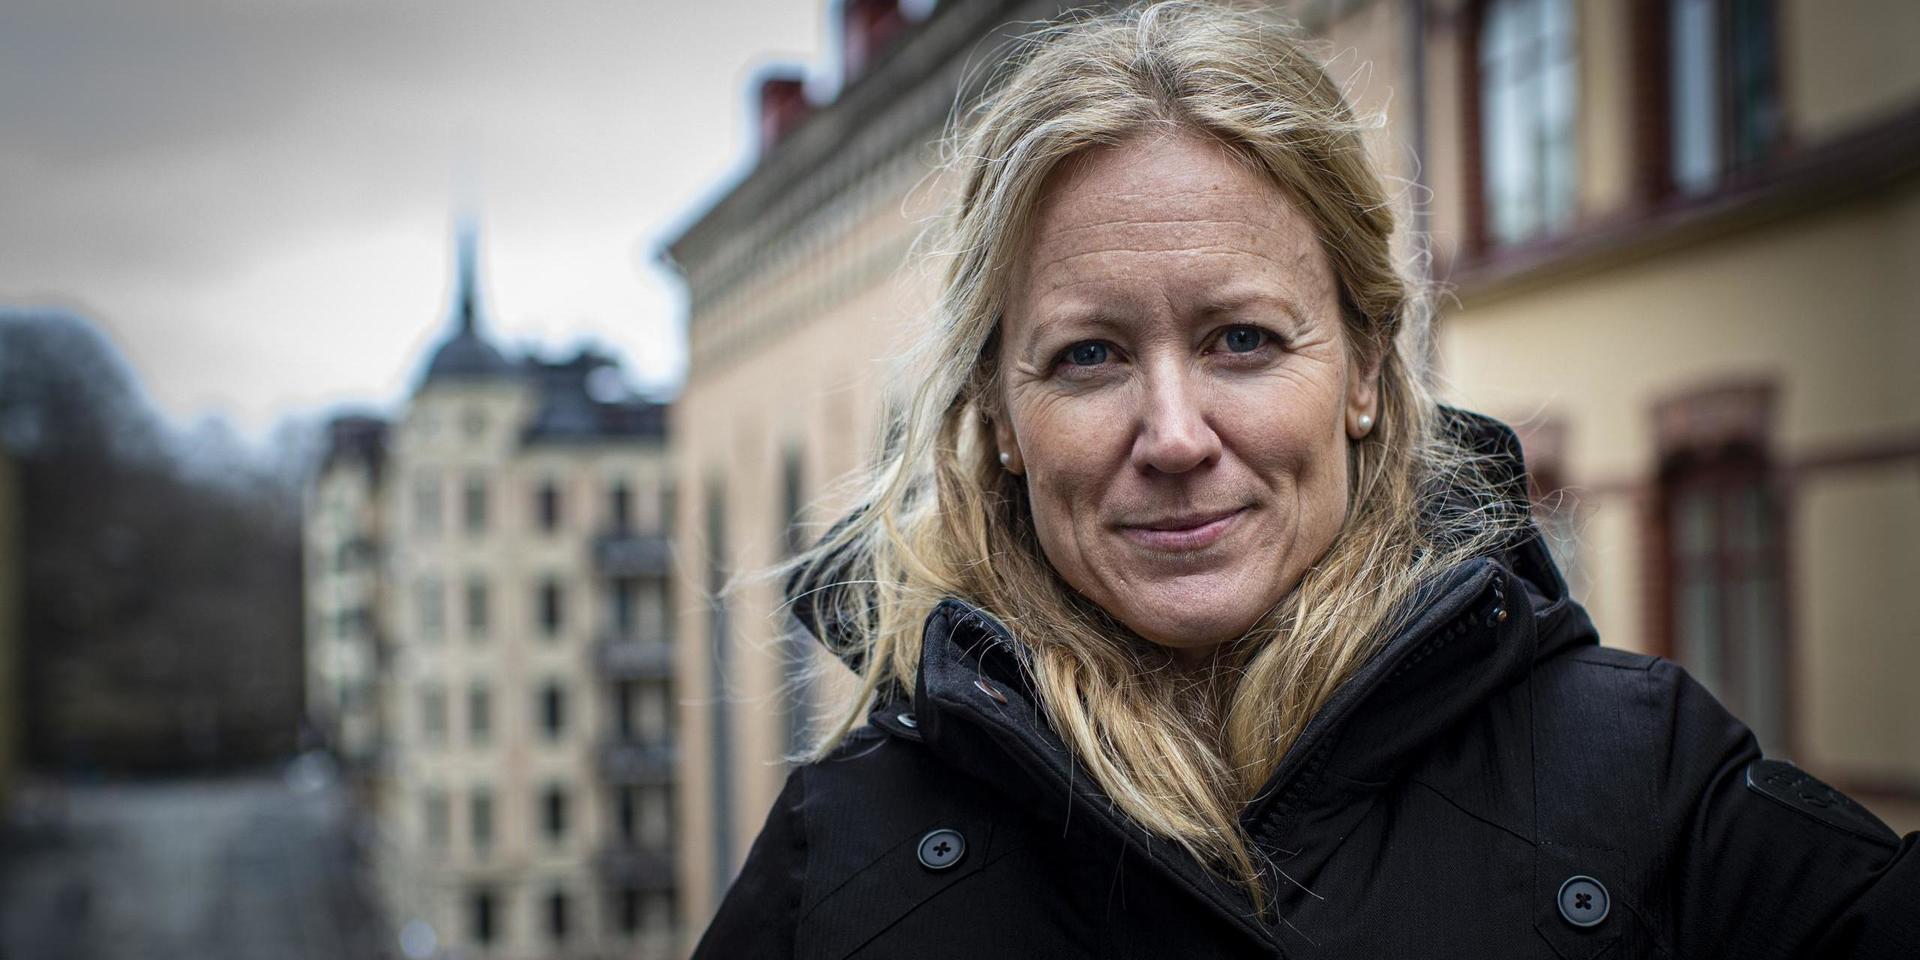 Kristine Rygge är vaccinationssamordnare i Västra Götaland